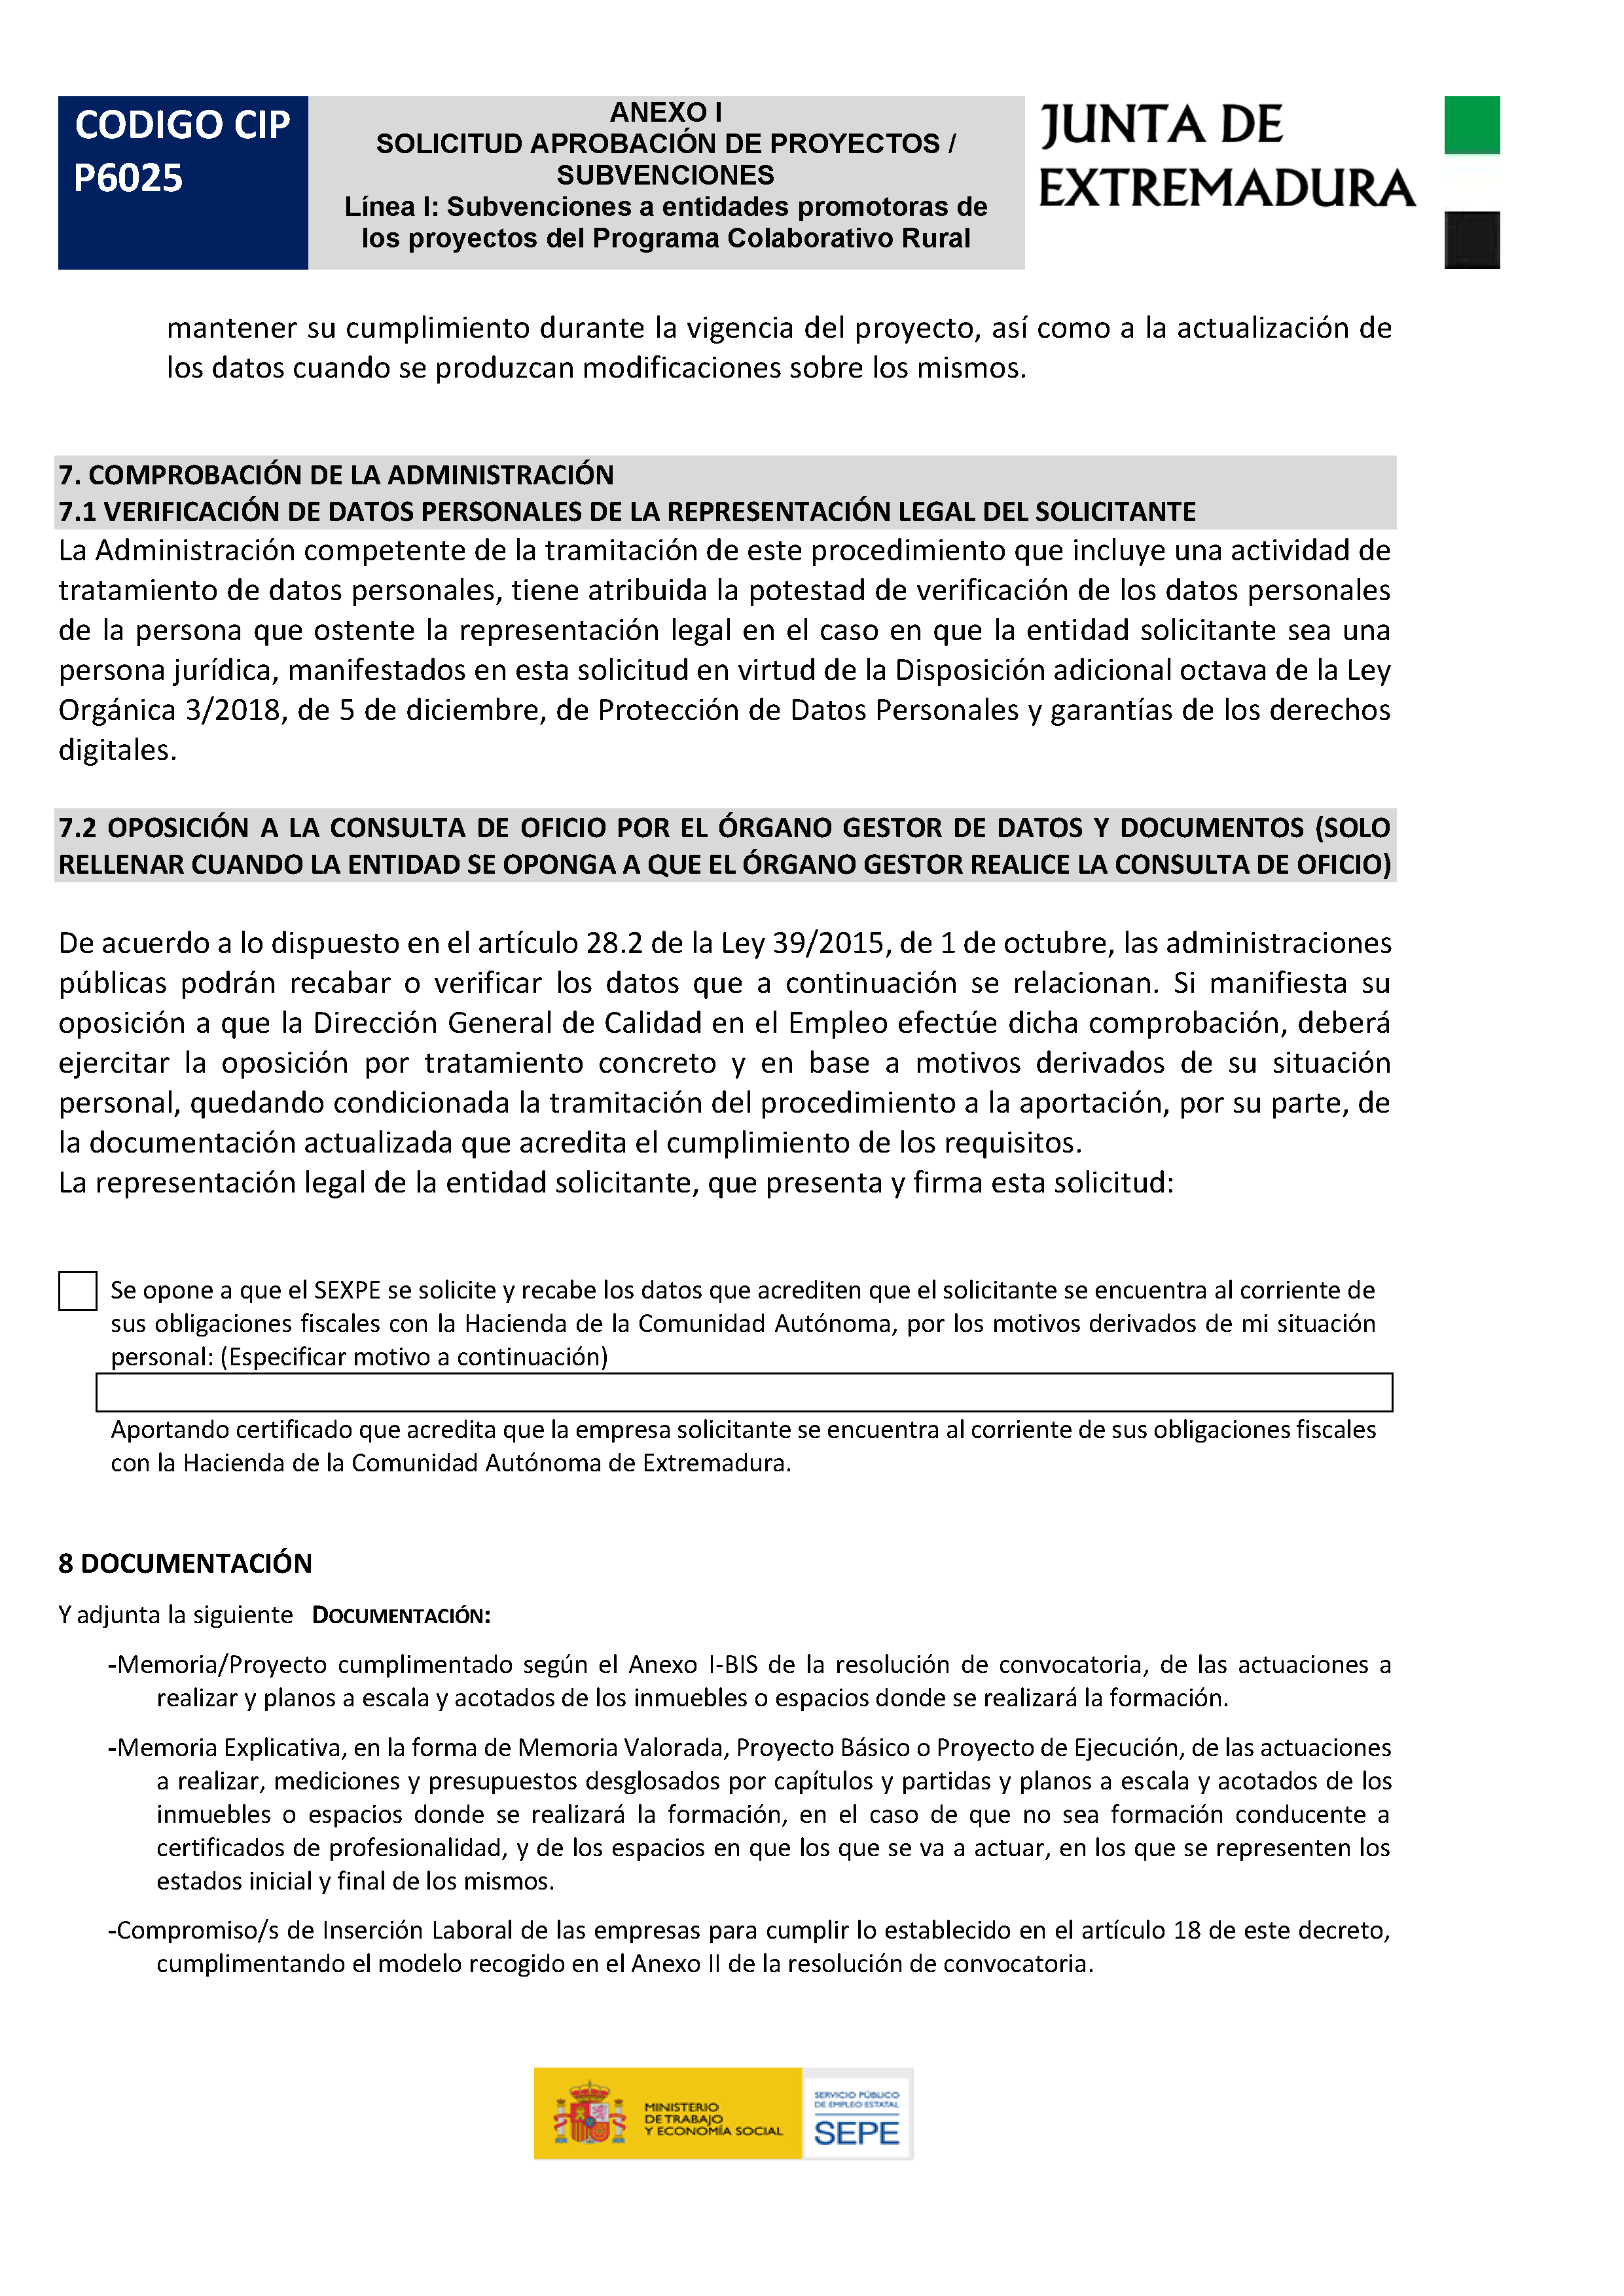 ANEXO I. SOLICITUD APROBACION DE PROYECTOS / SUBVENCIONES Pag 3